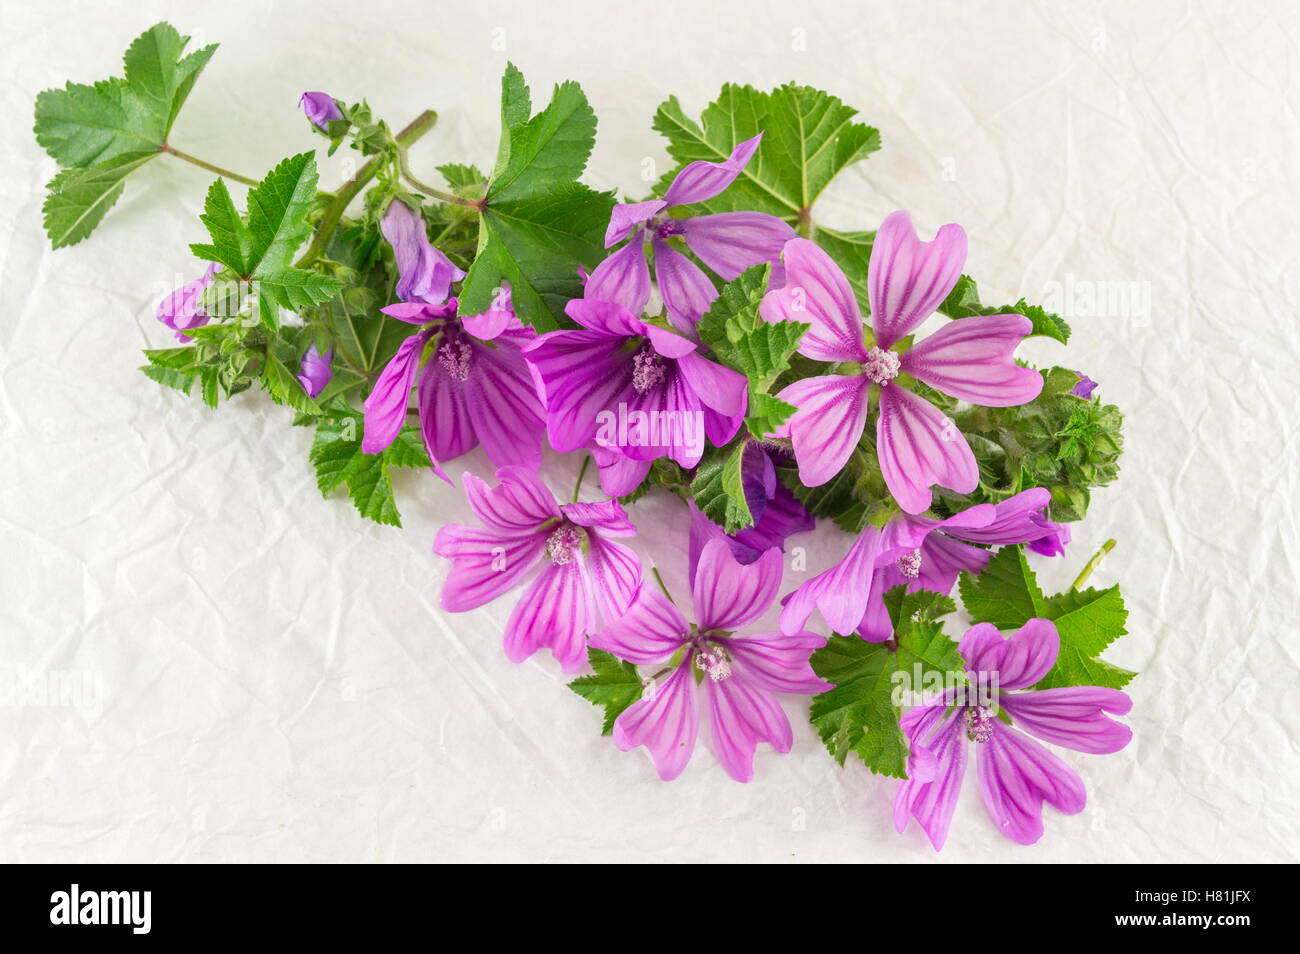 Malva sylvestris, mallow, flowers bouquet on white fabric Stock Photo